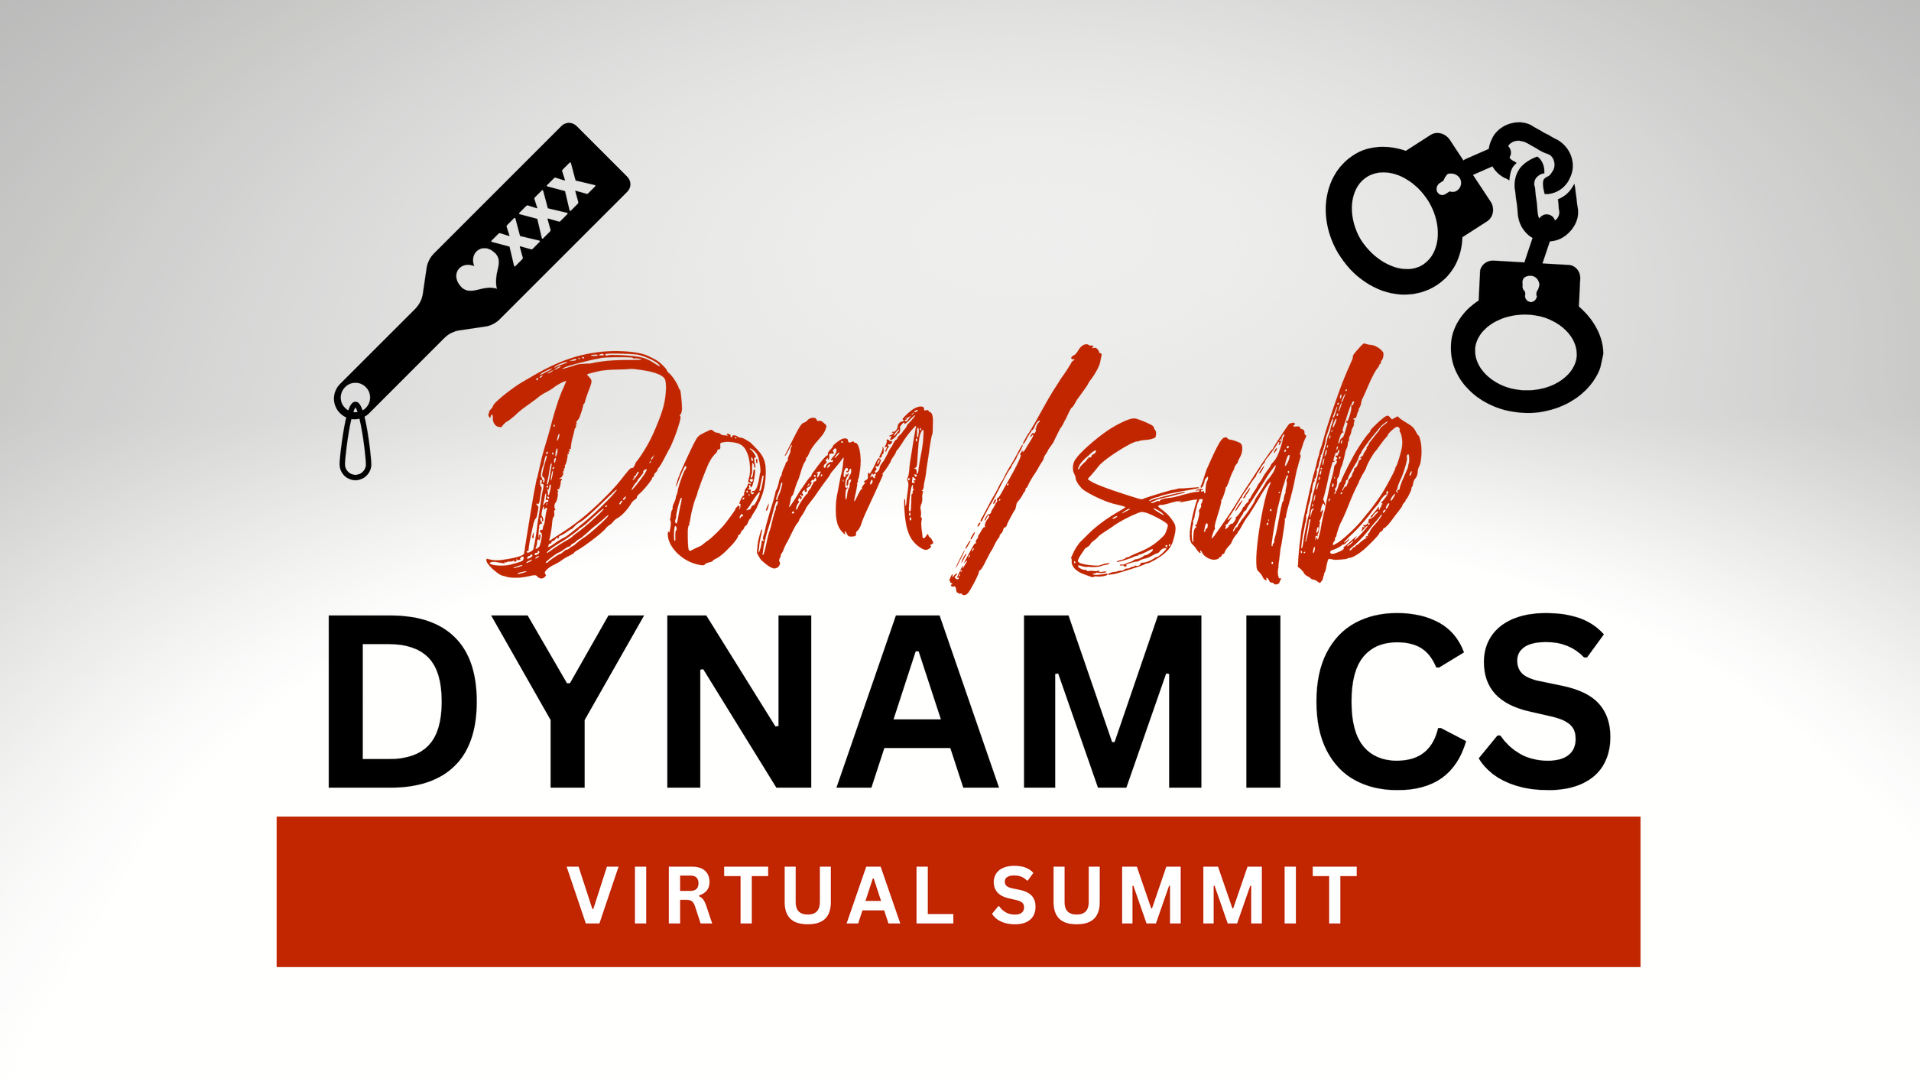 Virtual Workshop About Dom/Sub Dynamics

